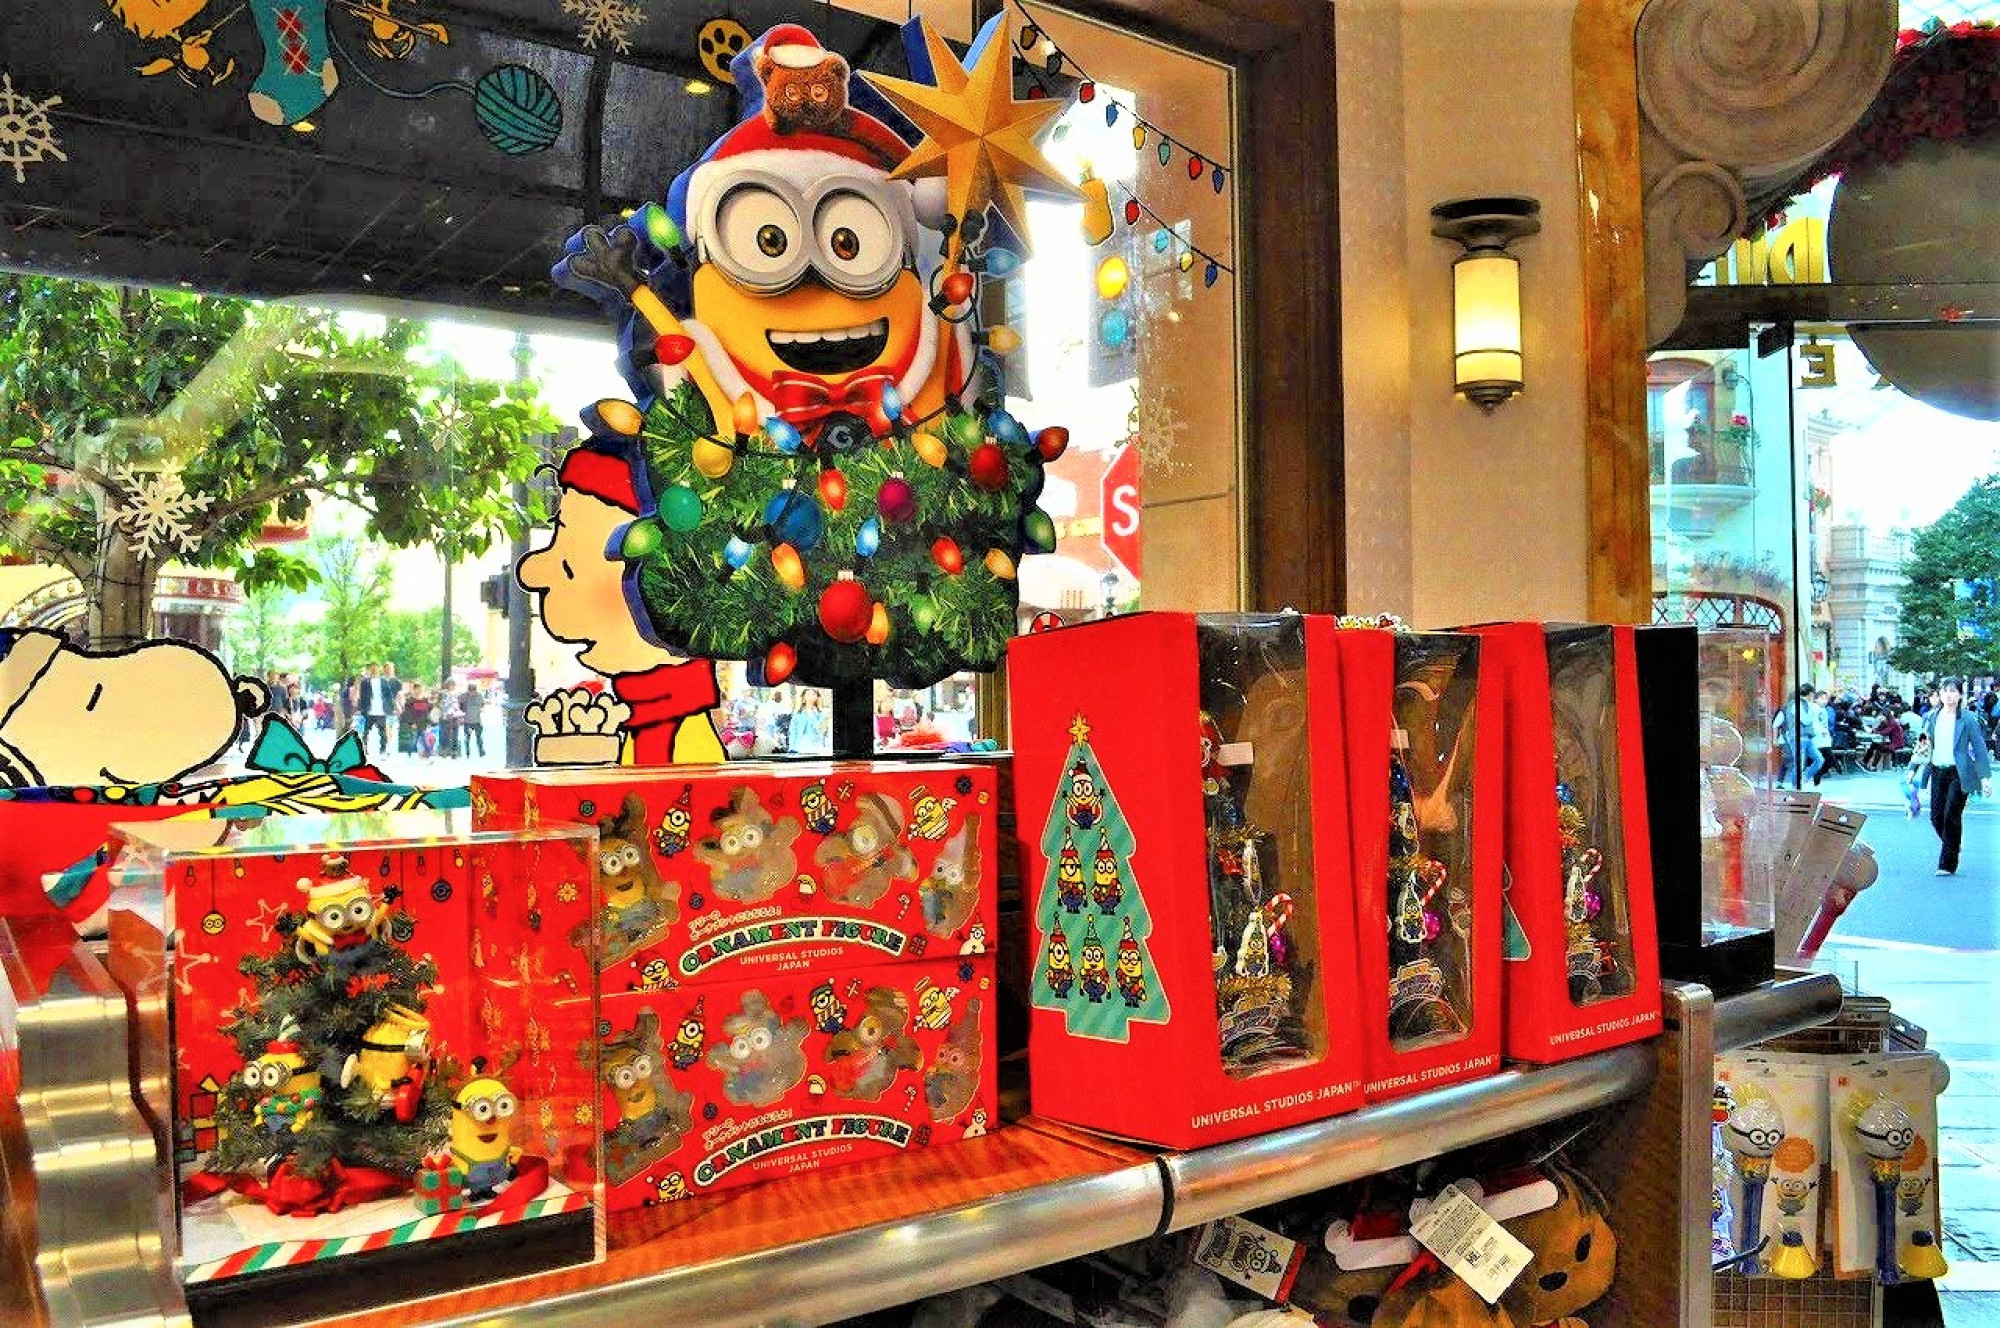 ユニバーサルスタジオストアの店内のディスプレイ 写真左がミニオンの小さなクリスマスツリー3 500円 キャステル Castel ディズニー情報